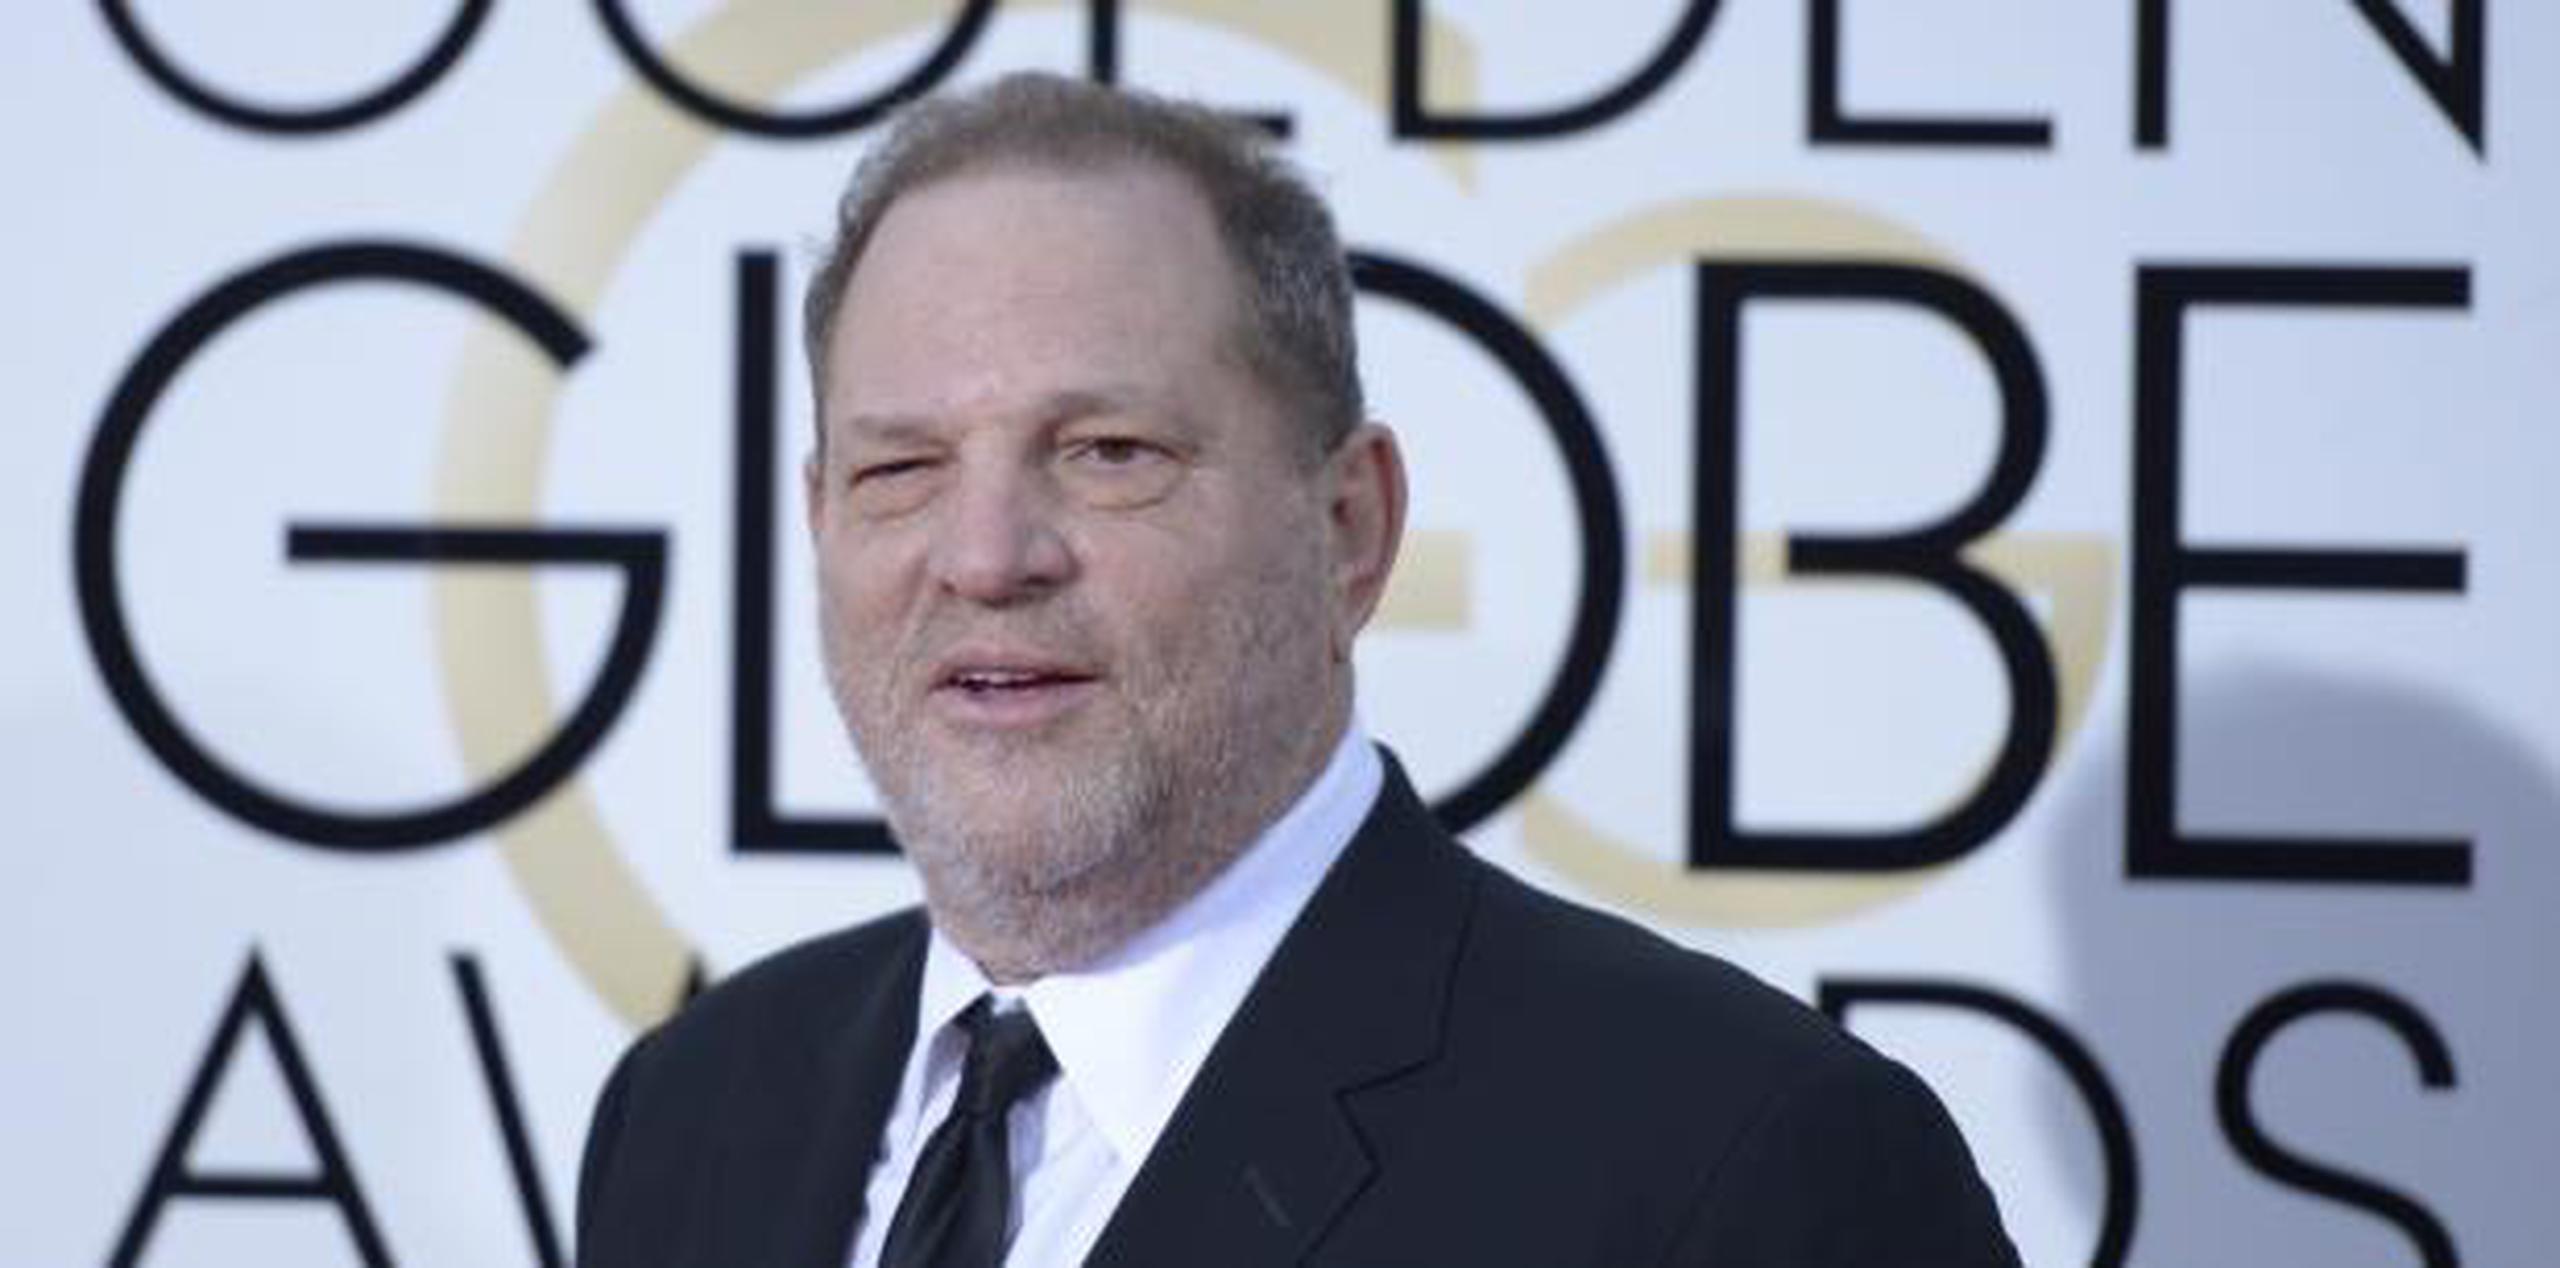 La investigación periodística que reveló las denuncias contra Weinstein ganaron el Pulitzer y el movimiento #MeToo fue declarado Personaje del Año por Time. (AP)